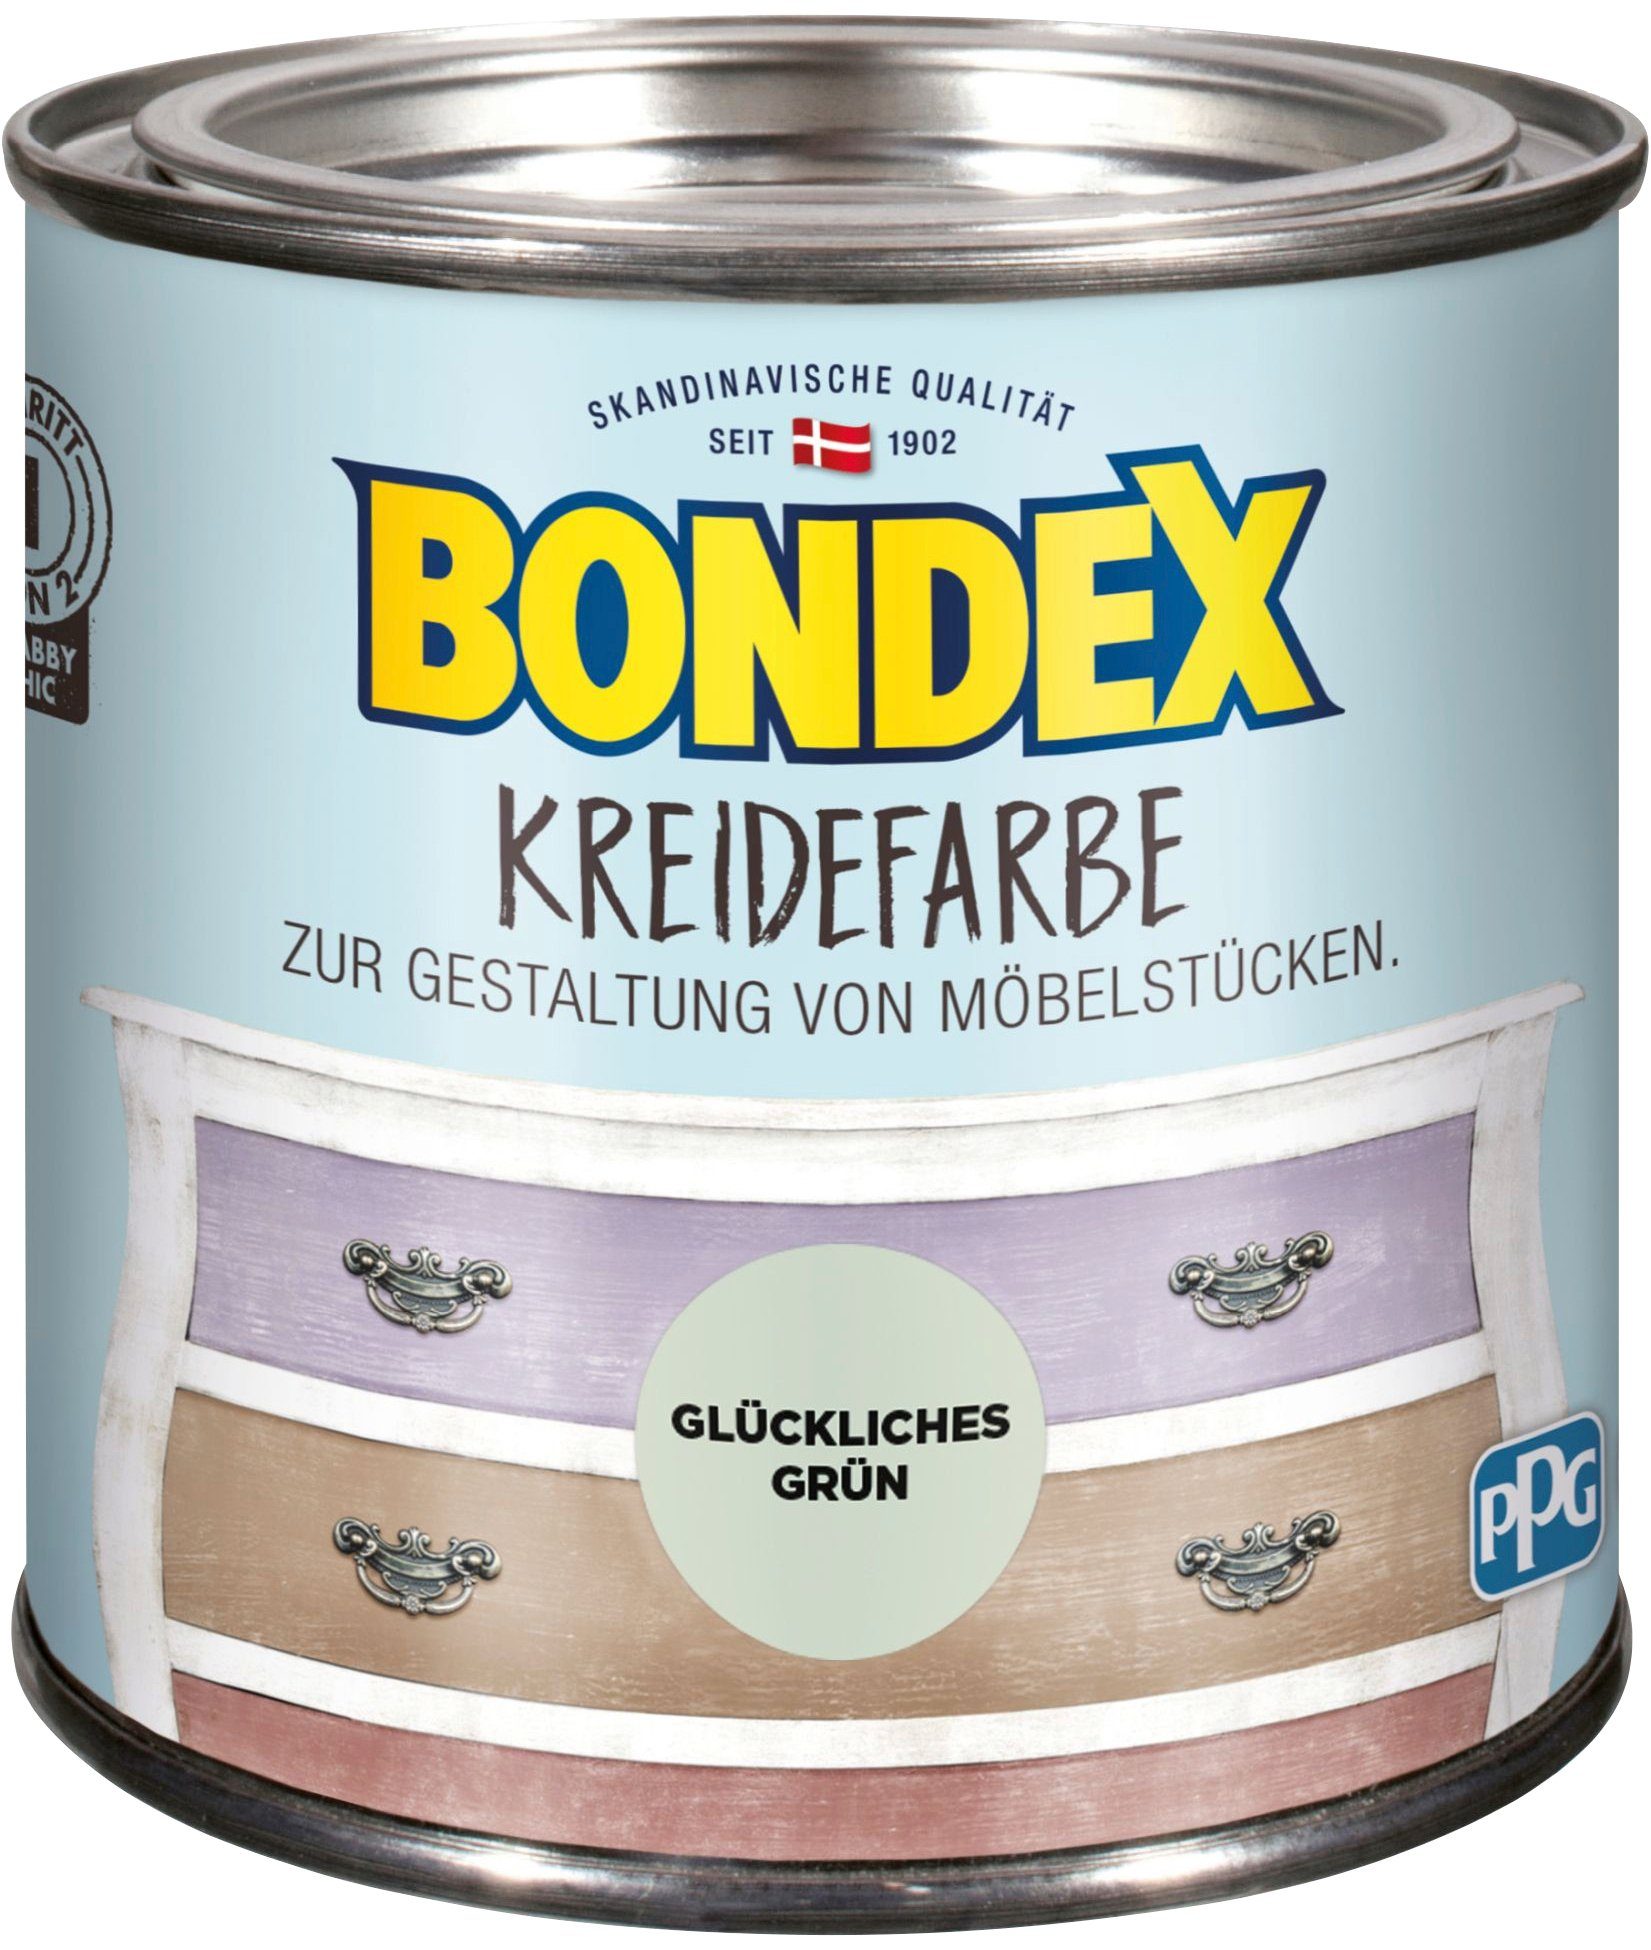 Bondex Kreidefarbe, Glückliches Grün, 0,5 Liter Inhalt